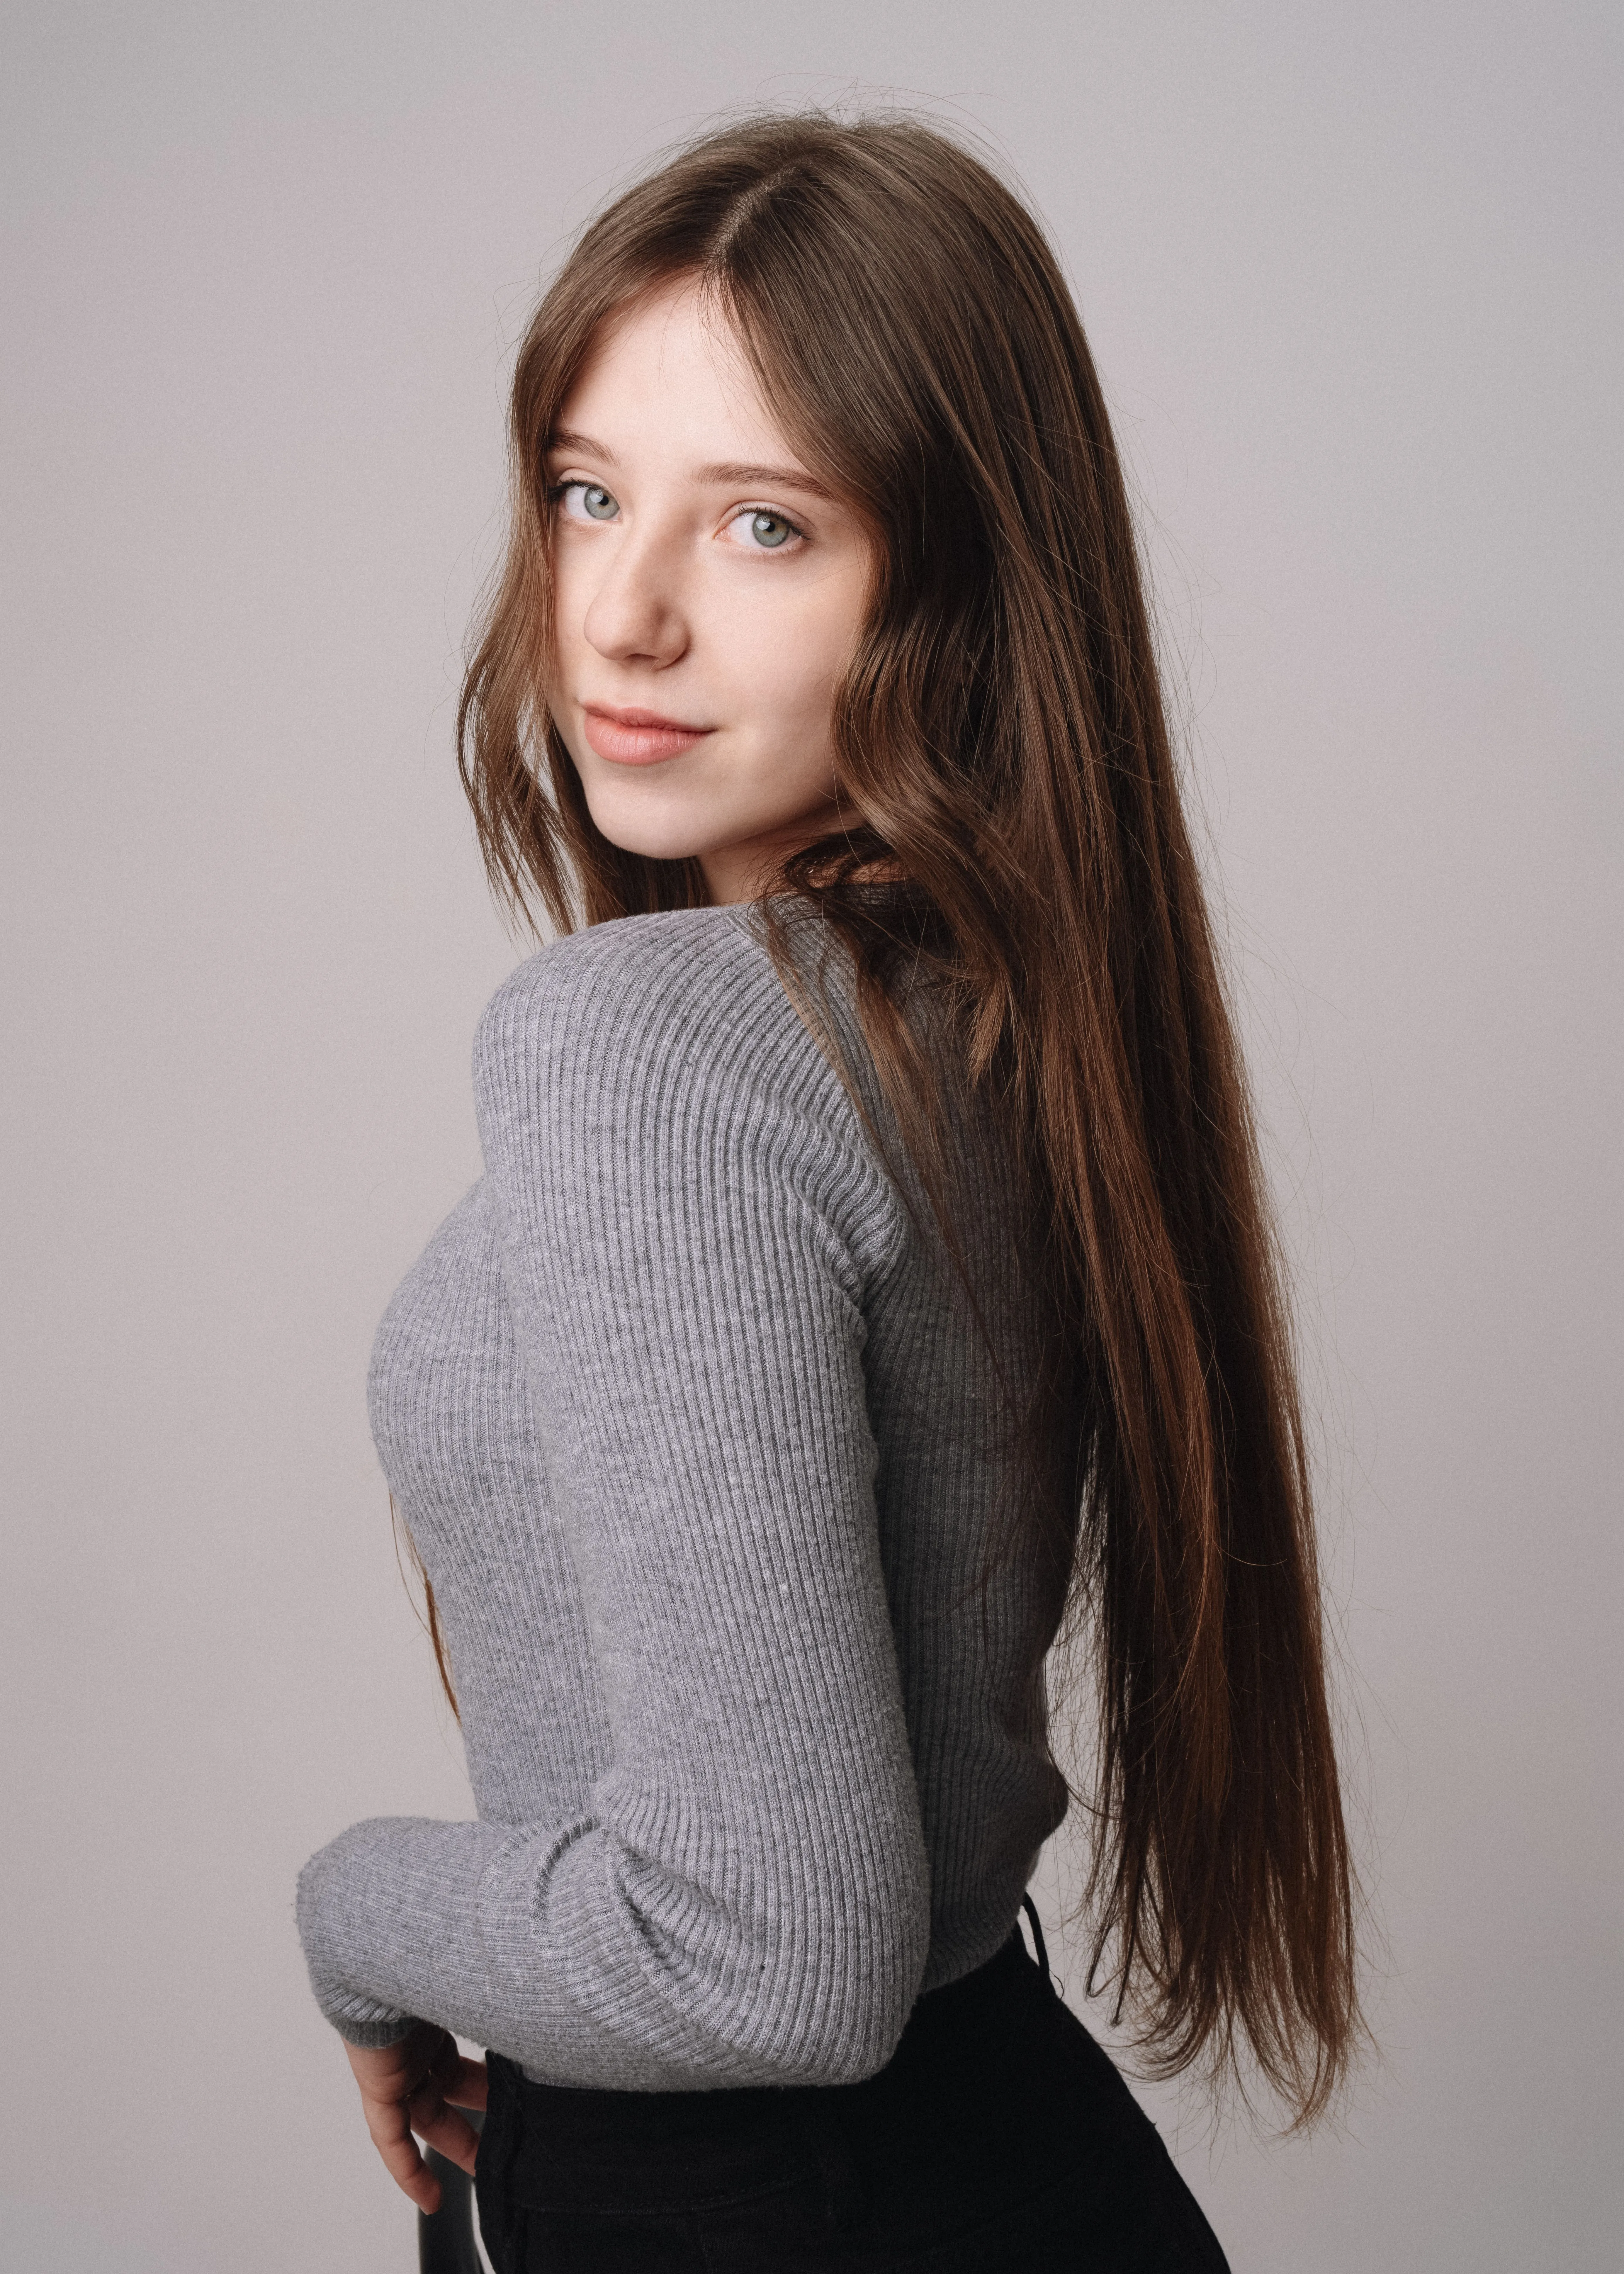 Полина Суханова, вокал